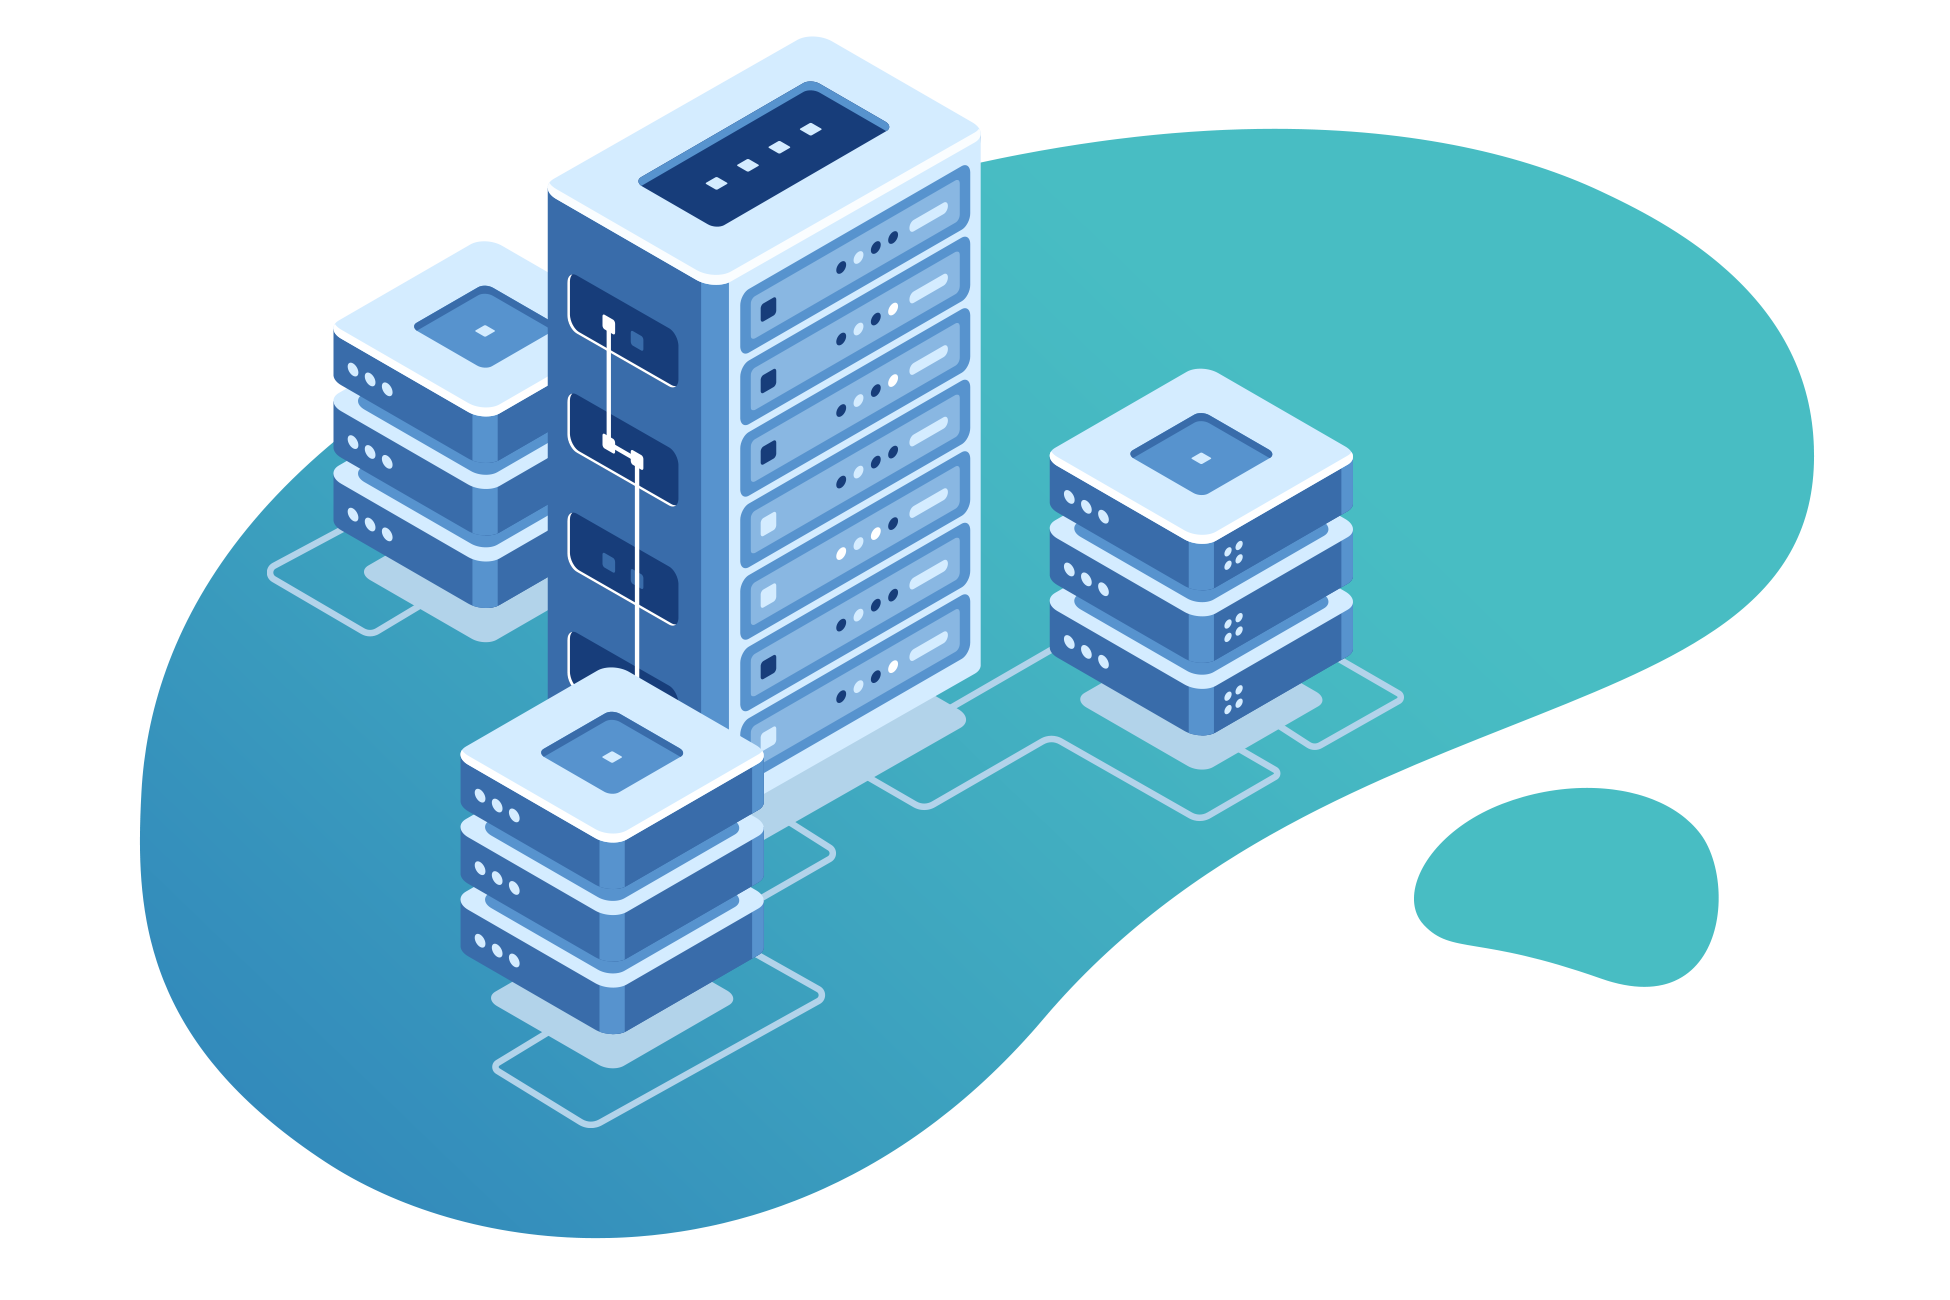 Bild von miteinander verknüpften Datenbank-Servern auf einem blauen Hintergrund im Cartoon Stil